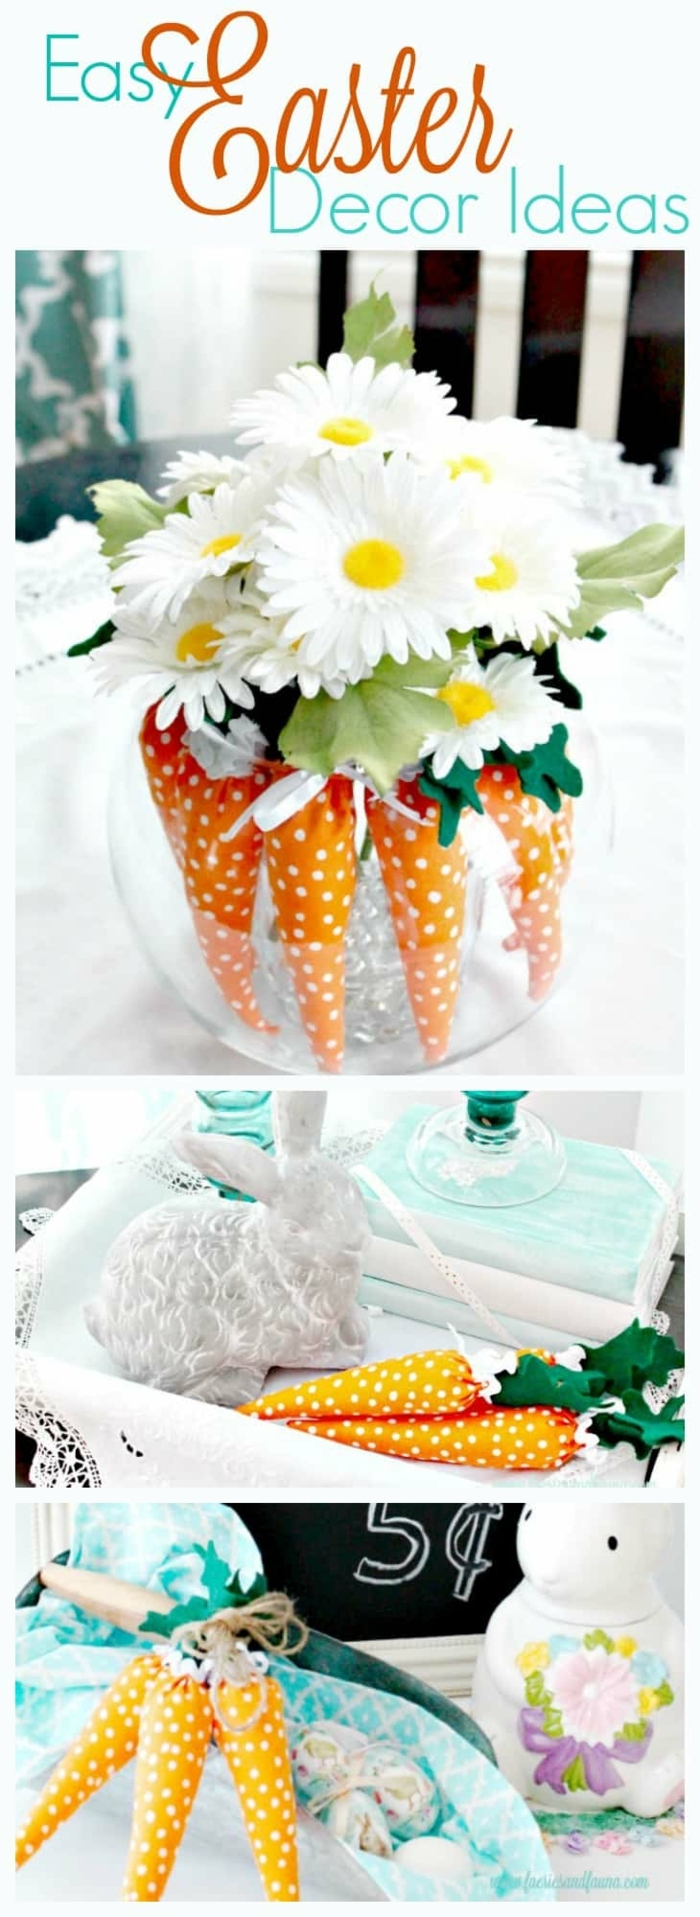 decoration de paques fait maison, carottes en textile et paquerettes blanches, decoration de table pour paques à faire soi-meme